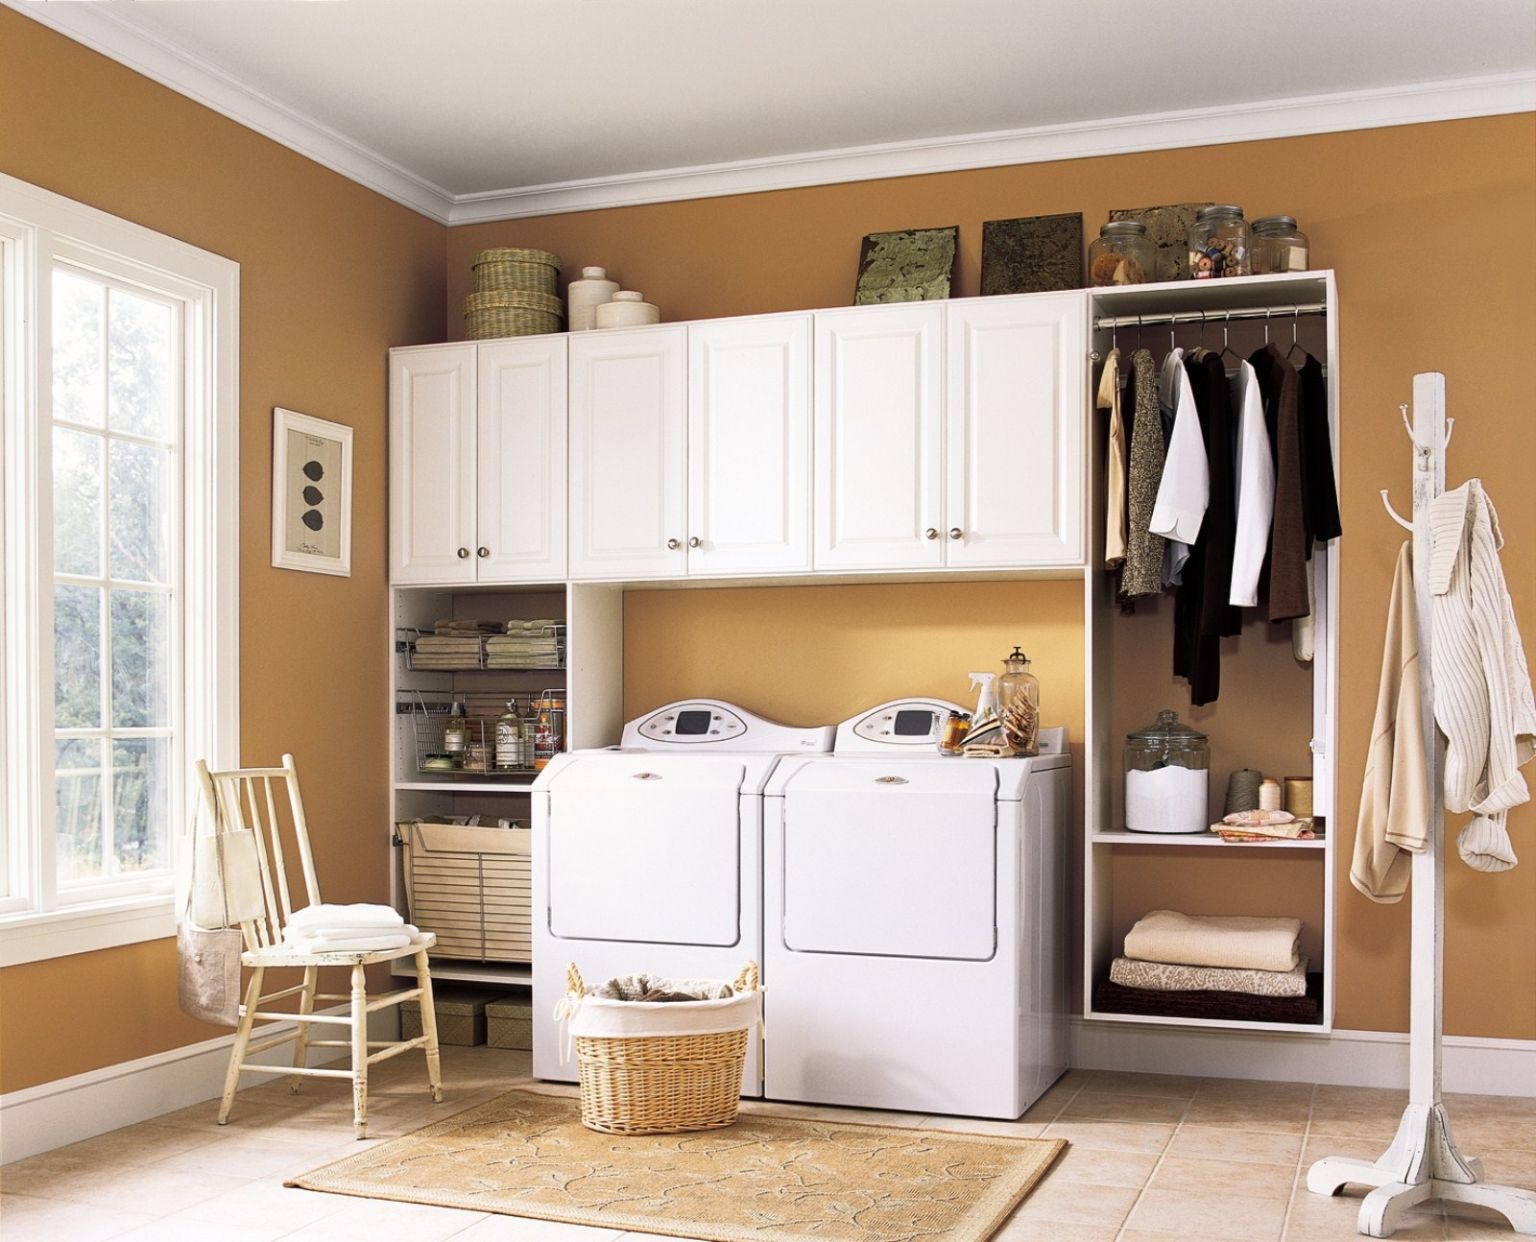 hình ảnh phòng giặt với nền tường sơn màu vàng gạch, nổi bật là hệ tủ kệ gắn tường màu trắng, phía dưới là thanh treo, hộc tủ âm tường gấp quần áo